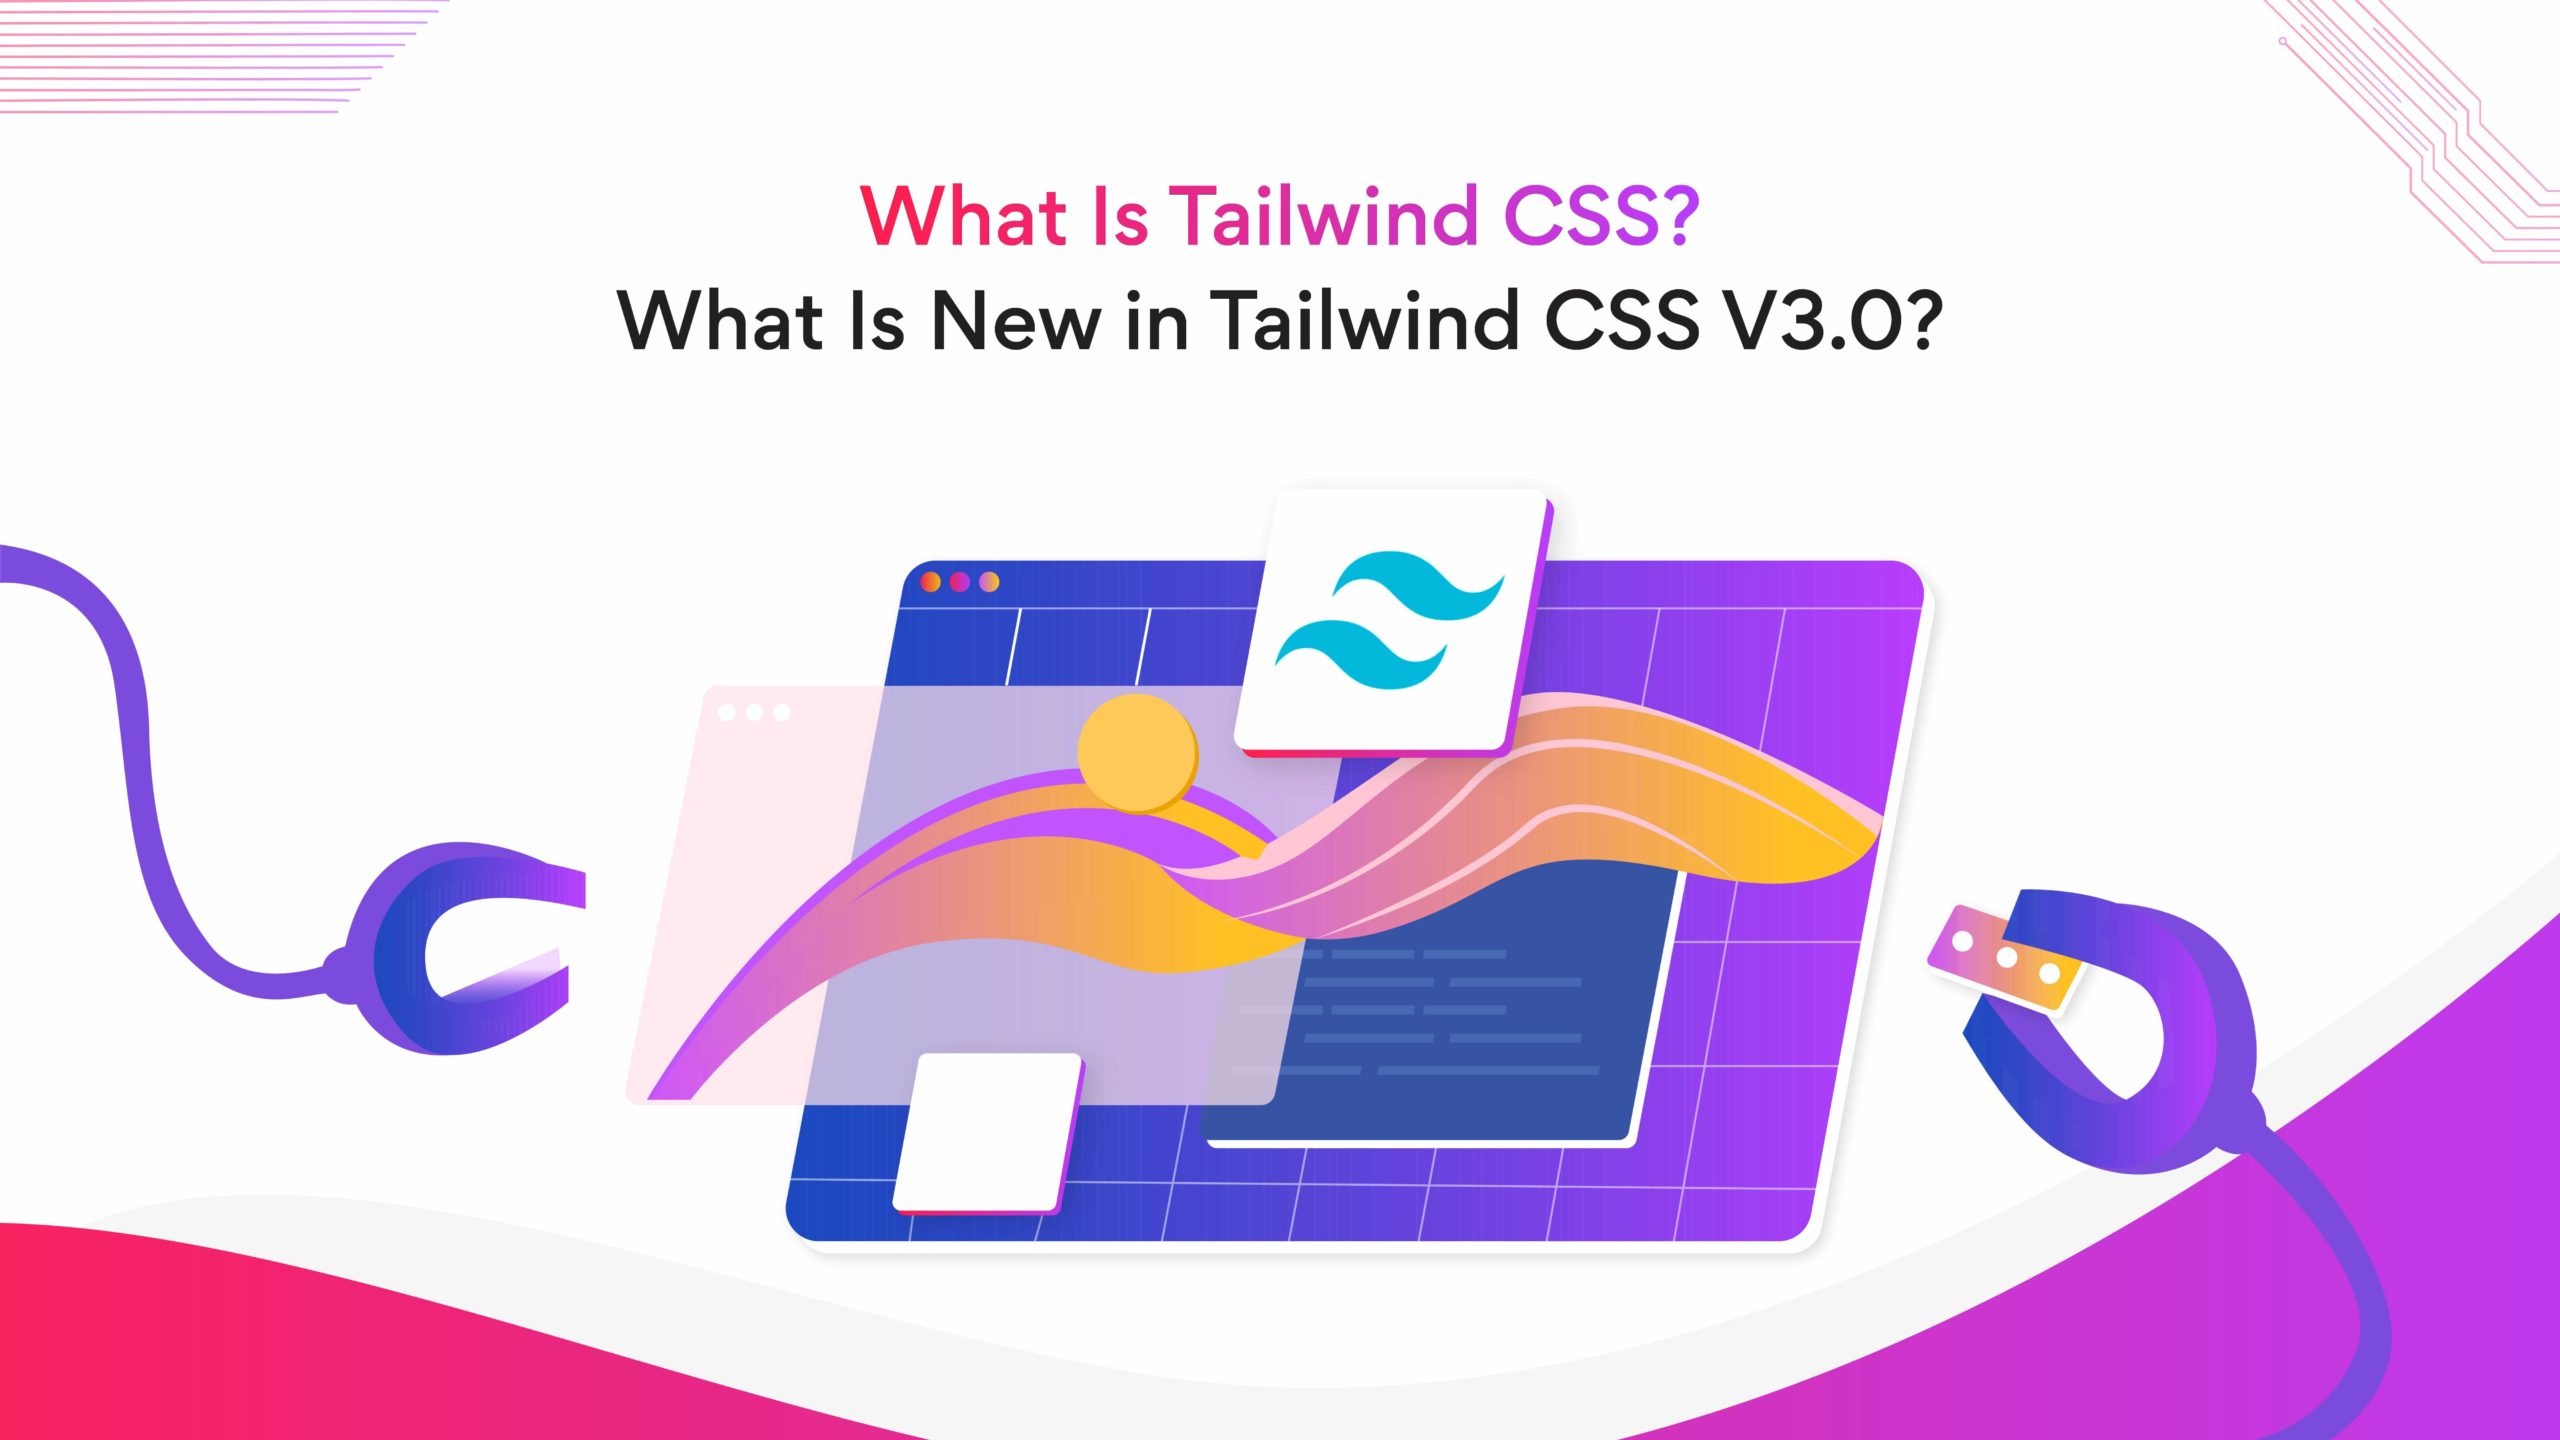 Tailwind CSS - a utility first framework